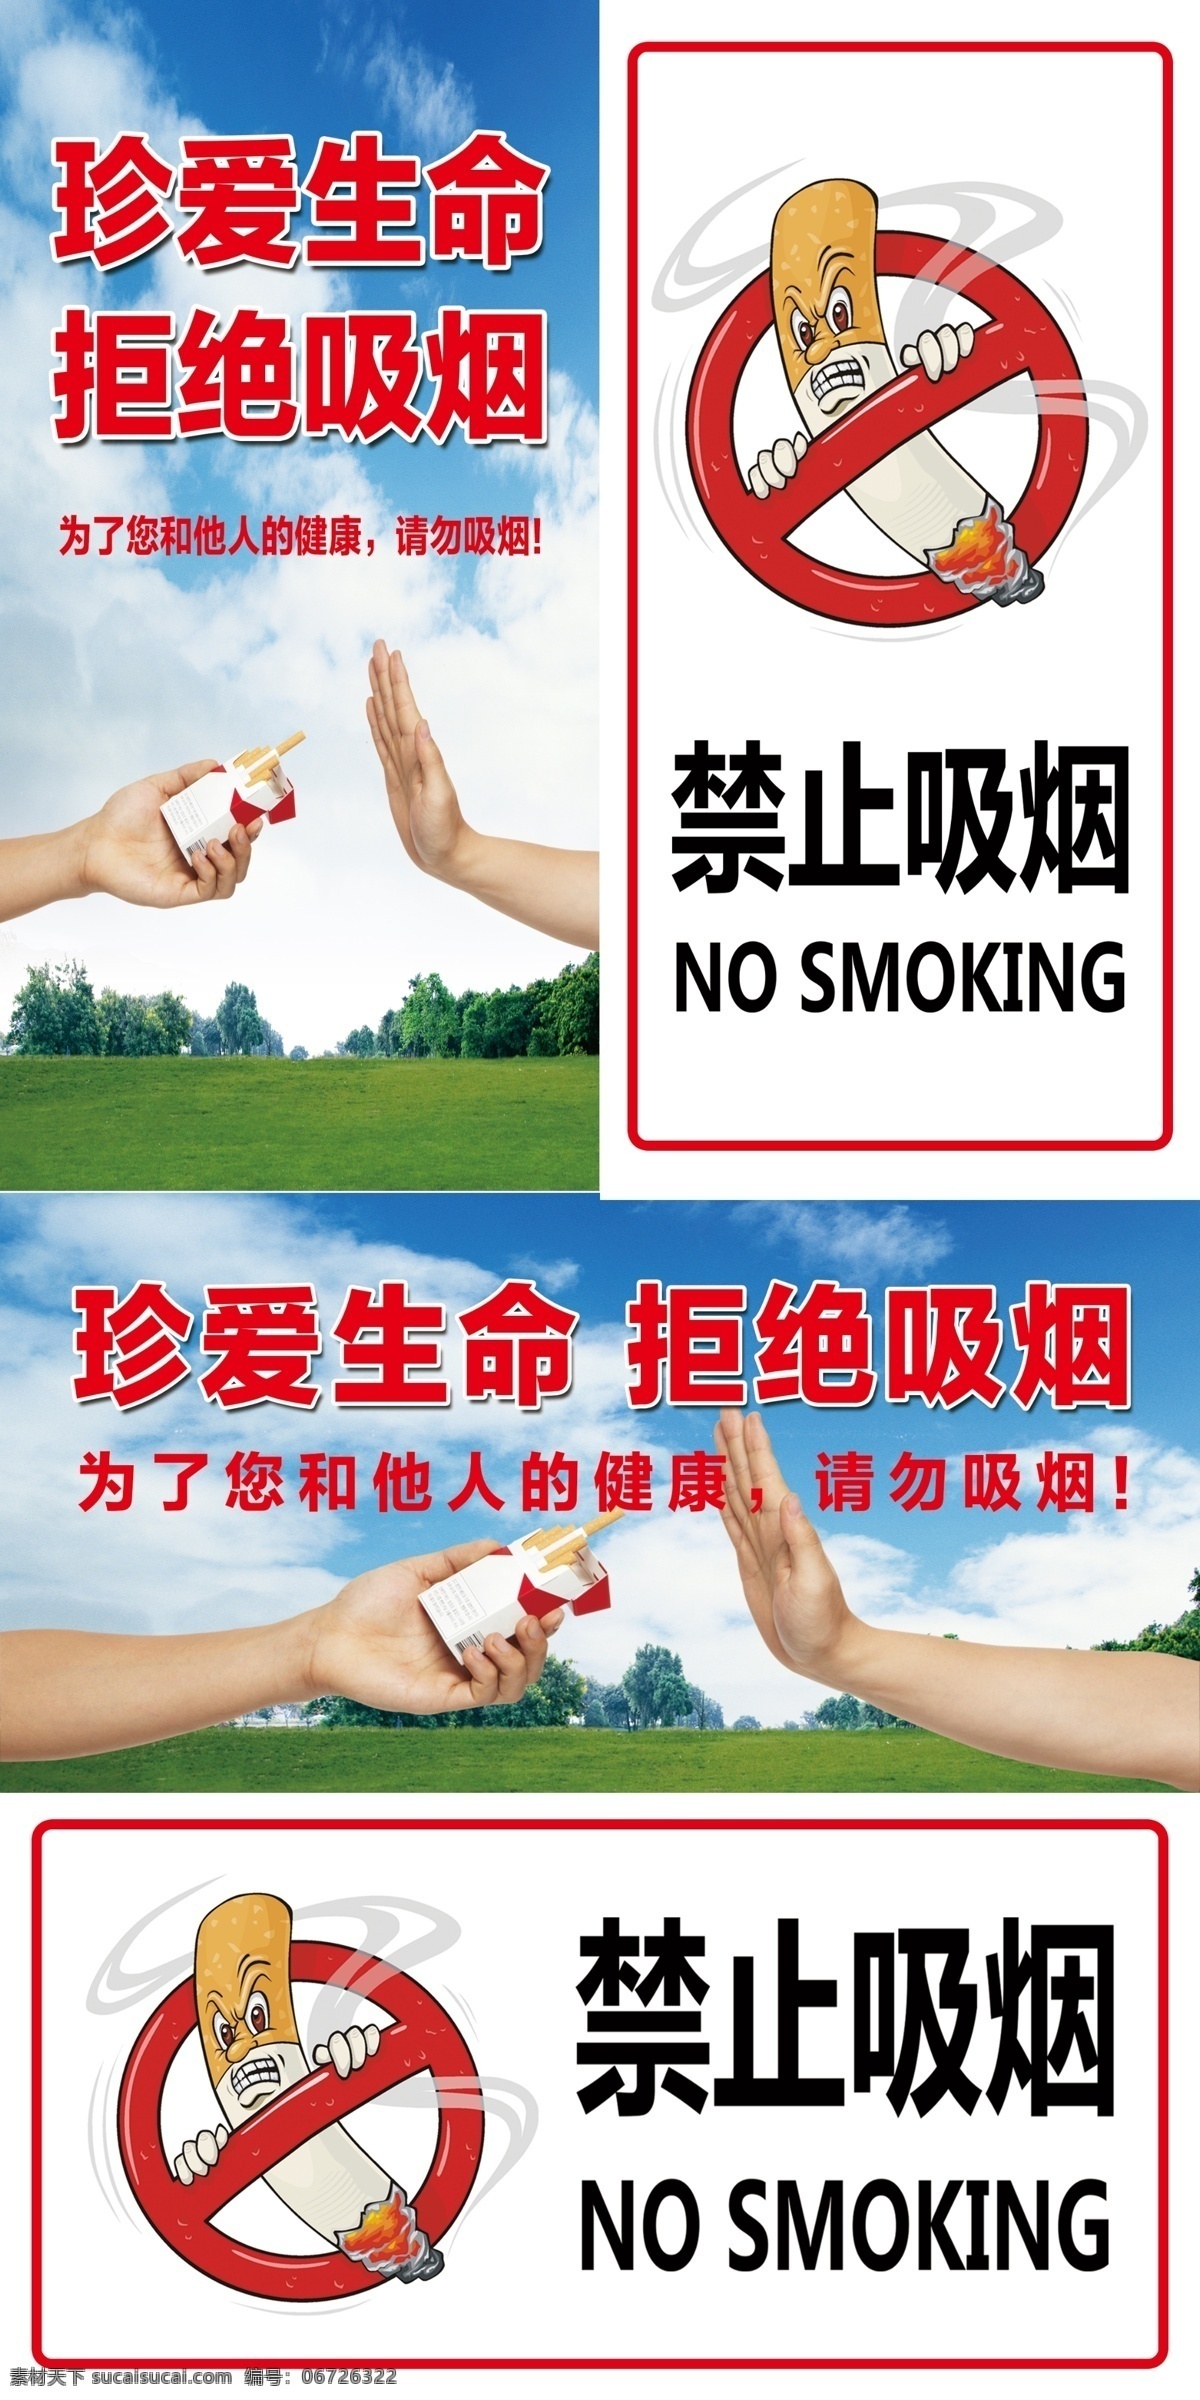 禁止吸烟 禁止 吸烟 珍爱 生命 拒绝 no smoking 请勿吸烟 健康